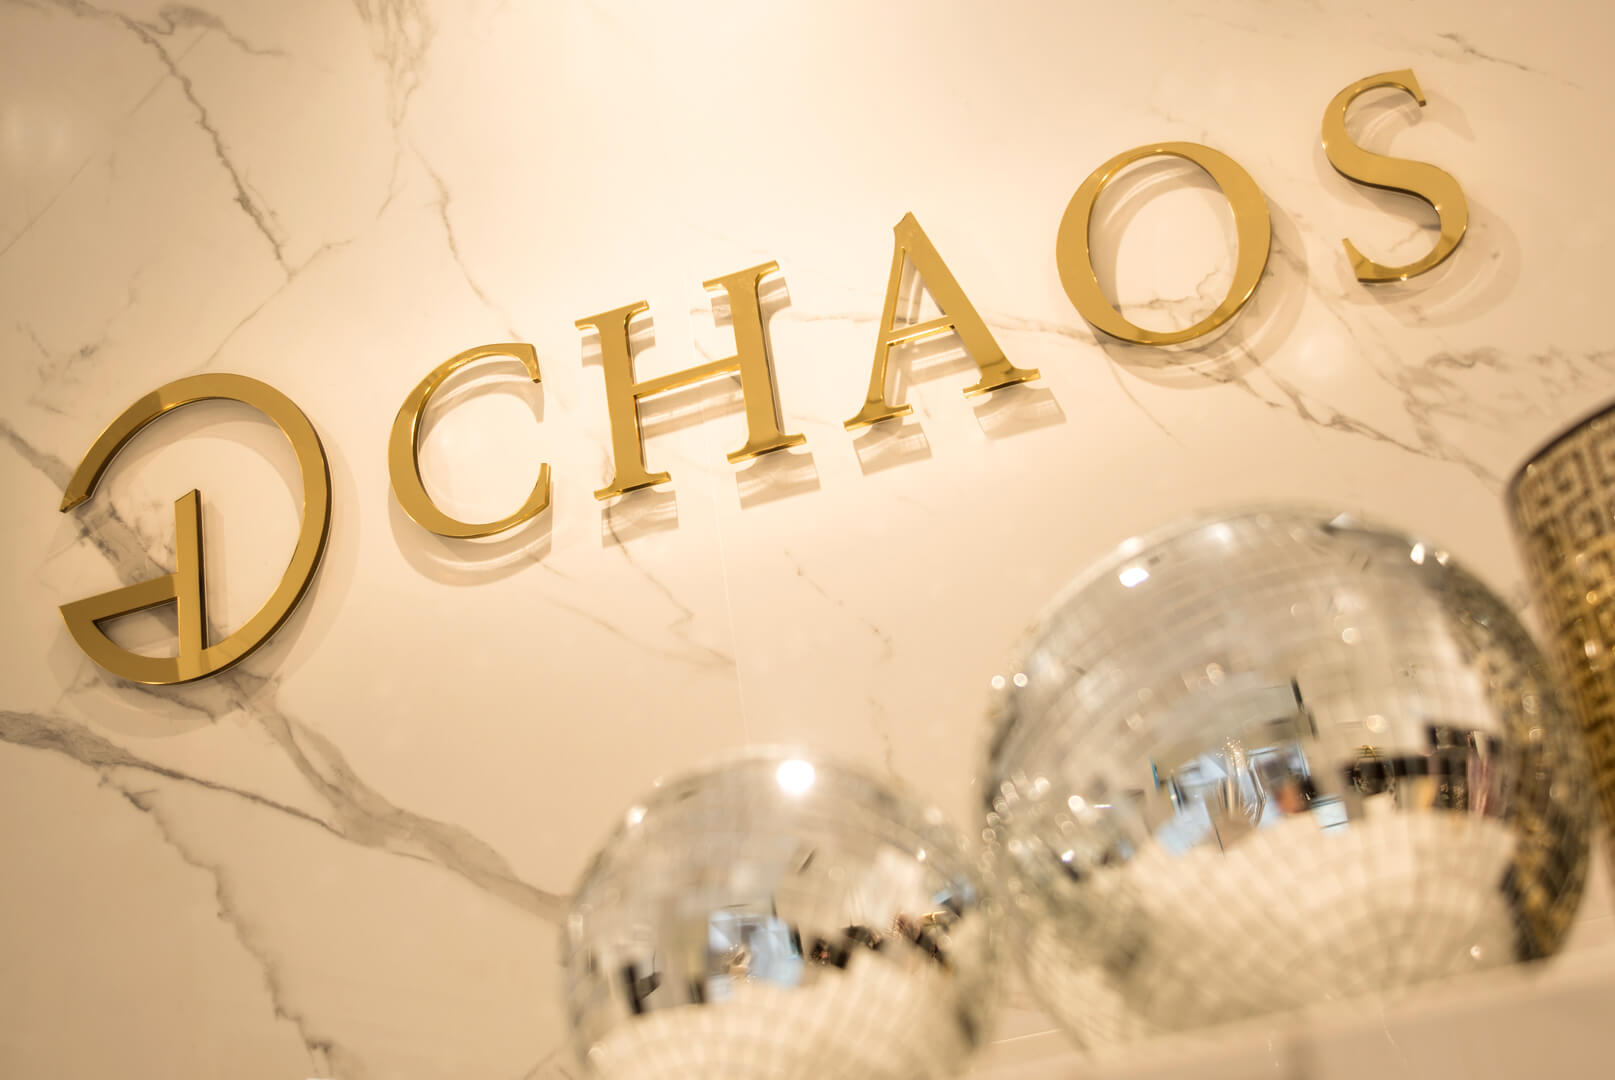 CHAOS - Chaos - logo dorato e lettere in blocco 3D in plexiglas posizionate sul muro